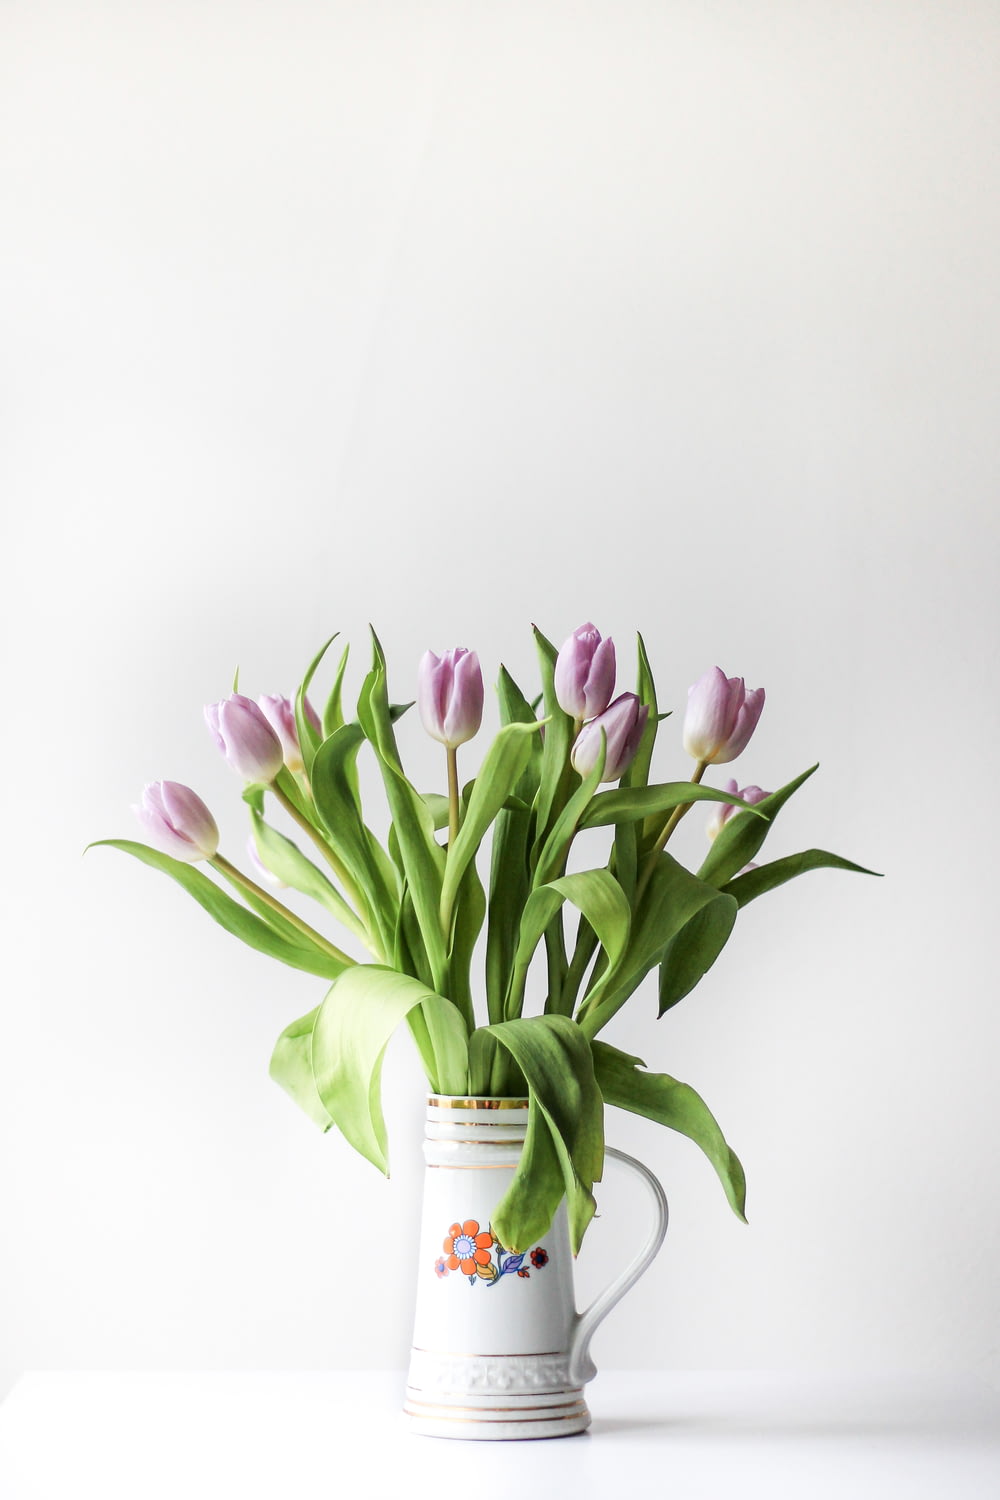 Fotografía de enfoque selectivo de arreglo floral de tulipán púrpura